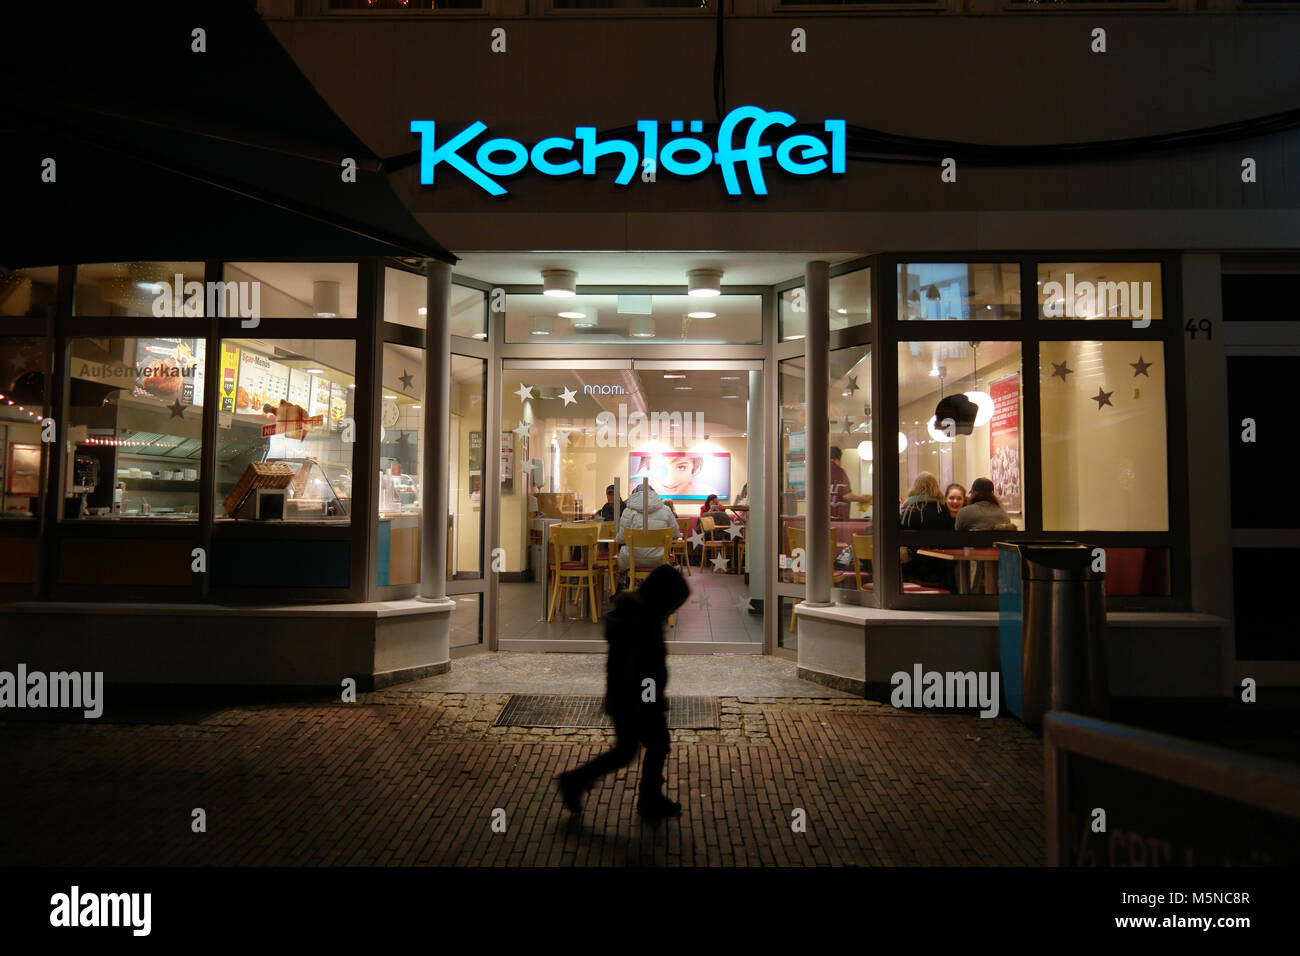 Kochlöffel allemand est une chaîne de restaurants fast-food Banque D'Images